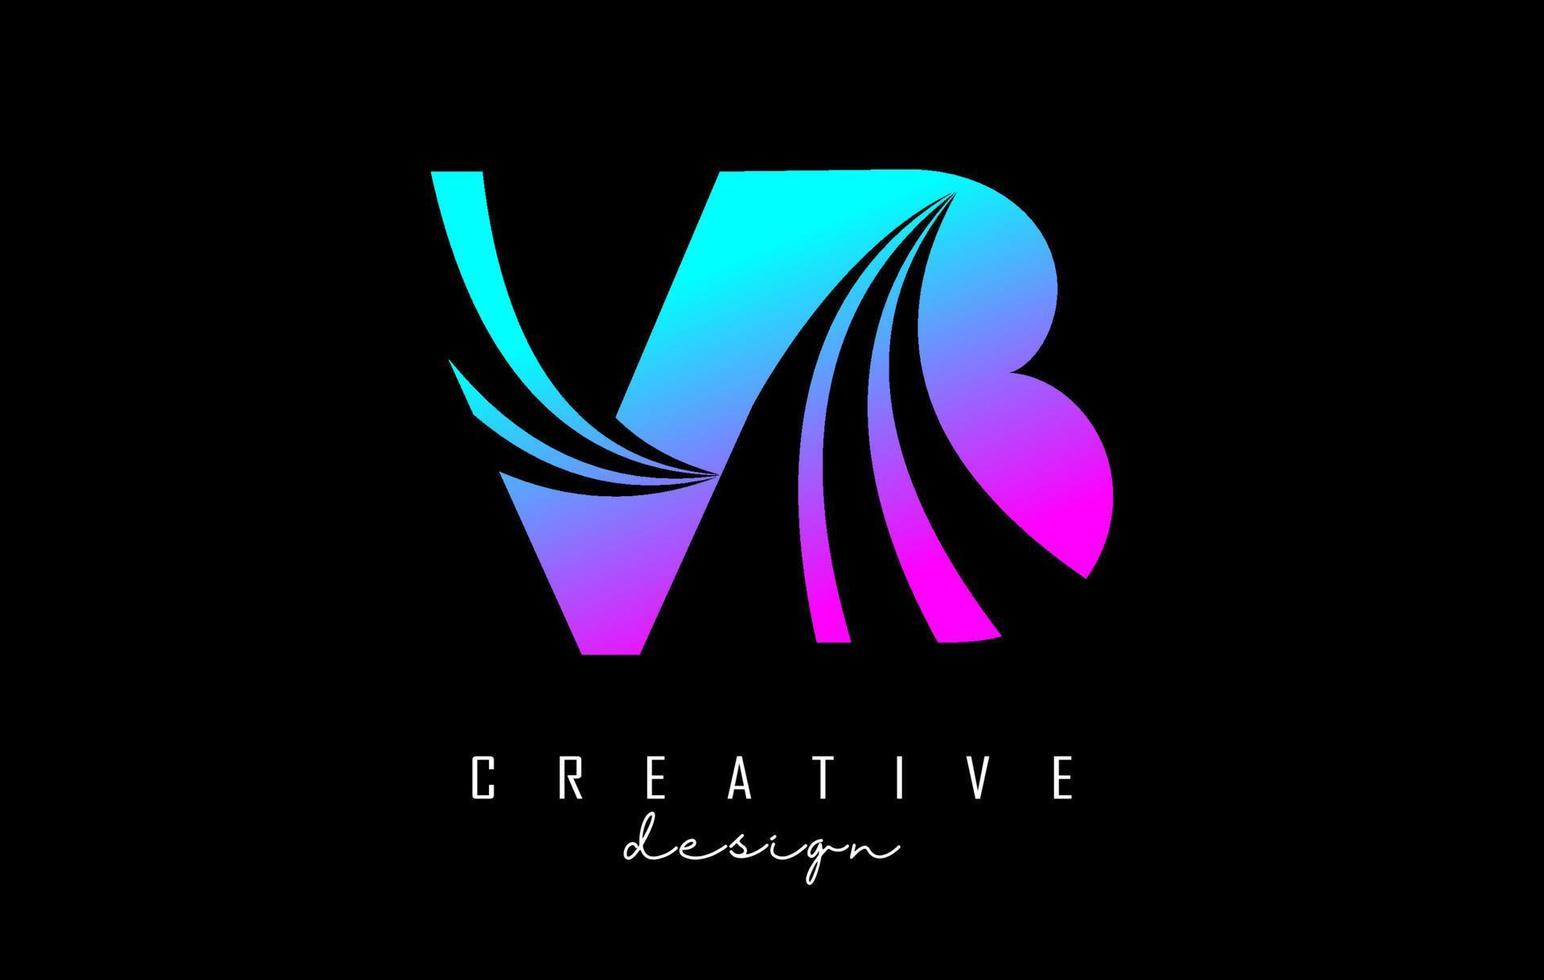 lettere colorate creative logo vb vb con linee guida e concept design stradale. lettere con disegno geometrico. vettore